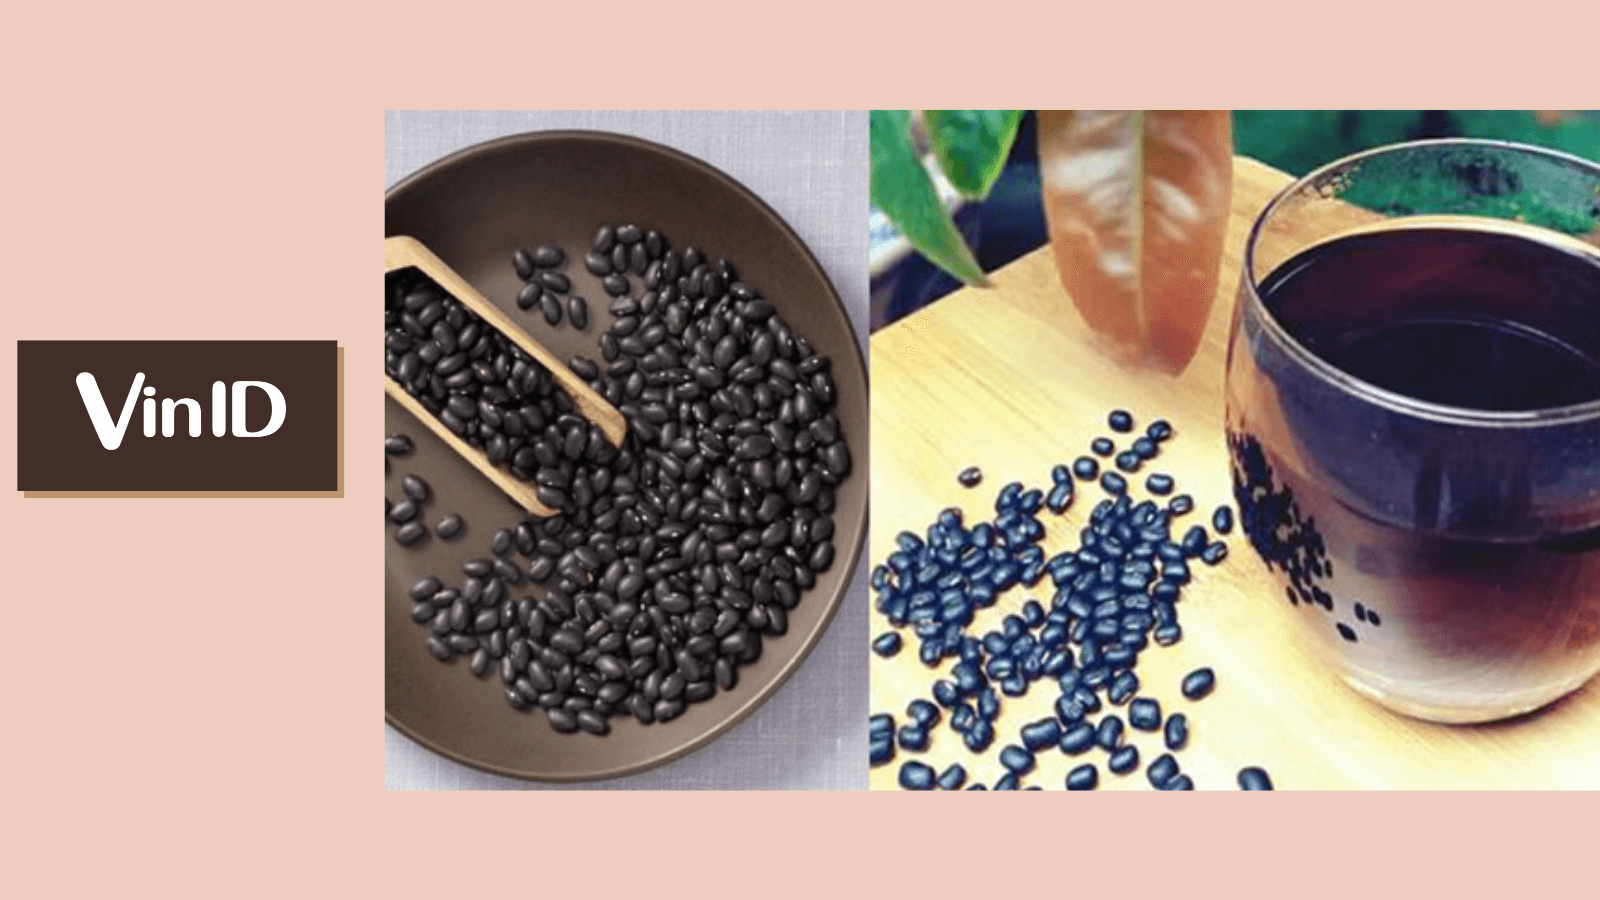 Cần loại bỏ những hạt nổi trên mặt nước khi rửa đậu đen không?
